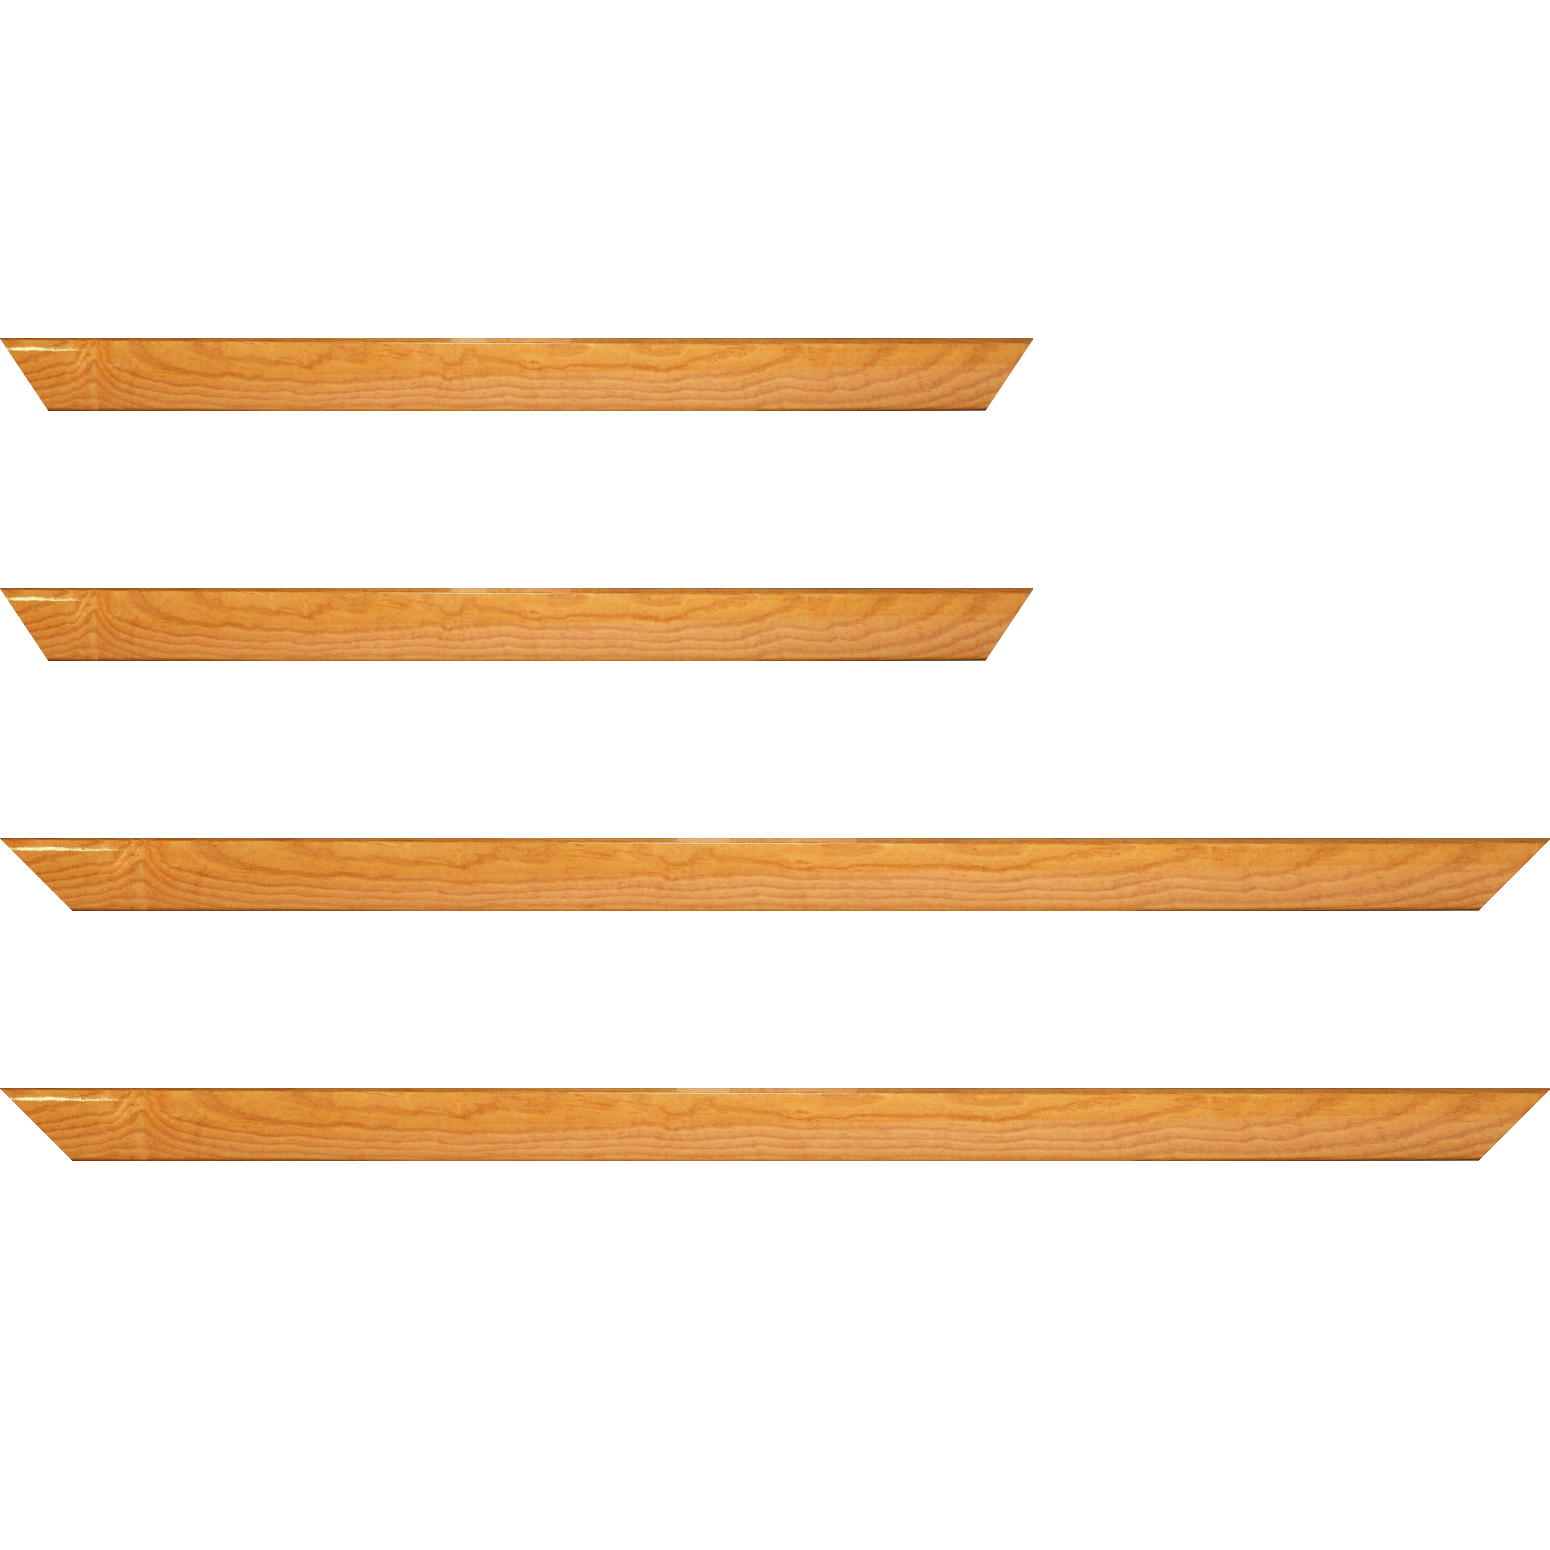 Baguette bois profil arrondi en pente plongeant largeur 2.4cm couleur jaune moutarde finition vernis brillant,veine du bois  apparent (pin) , - 59.4x84.1